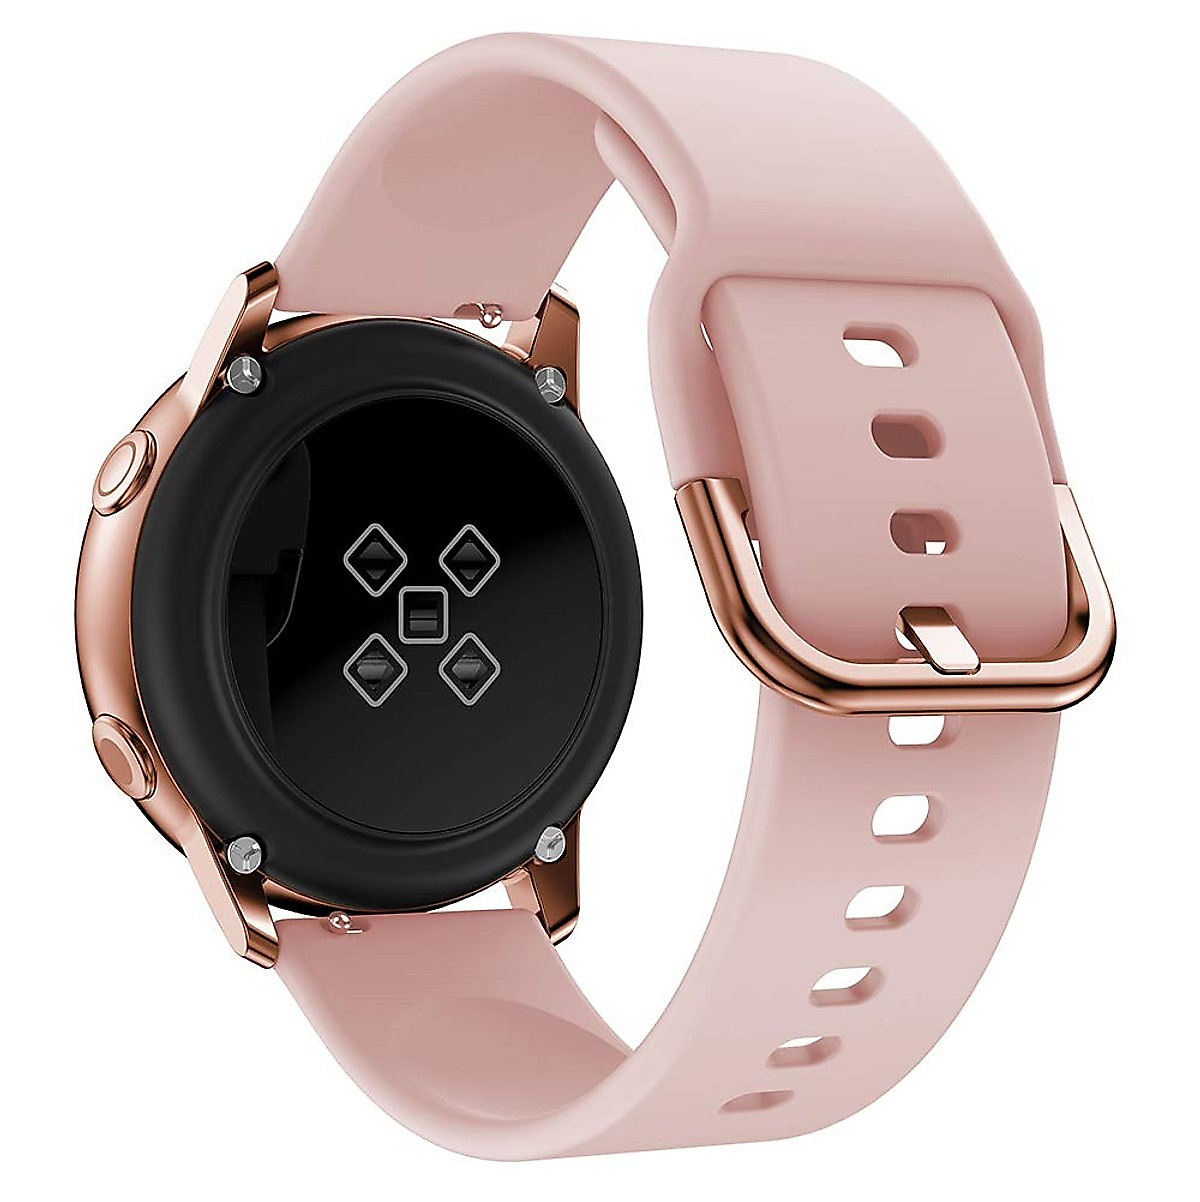 Dây Cao Su dành Cho Galaxy Watch Active 2, Active 1, Galaxy Watch 42 Size 20mm Hàng chính hãng PhanhDuong đủ màu